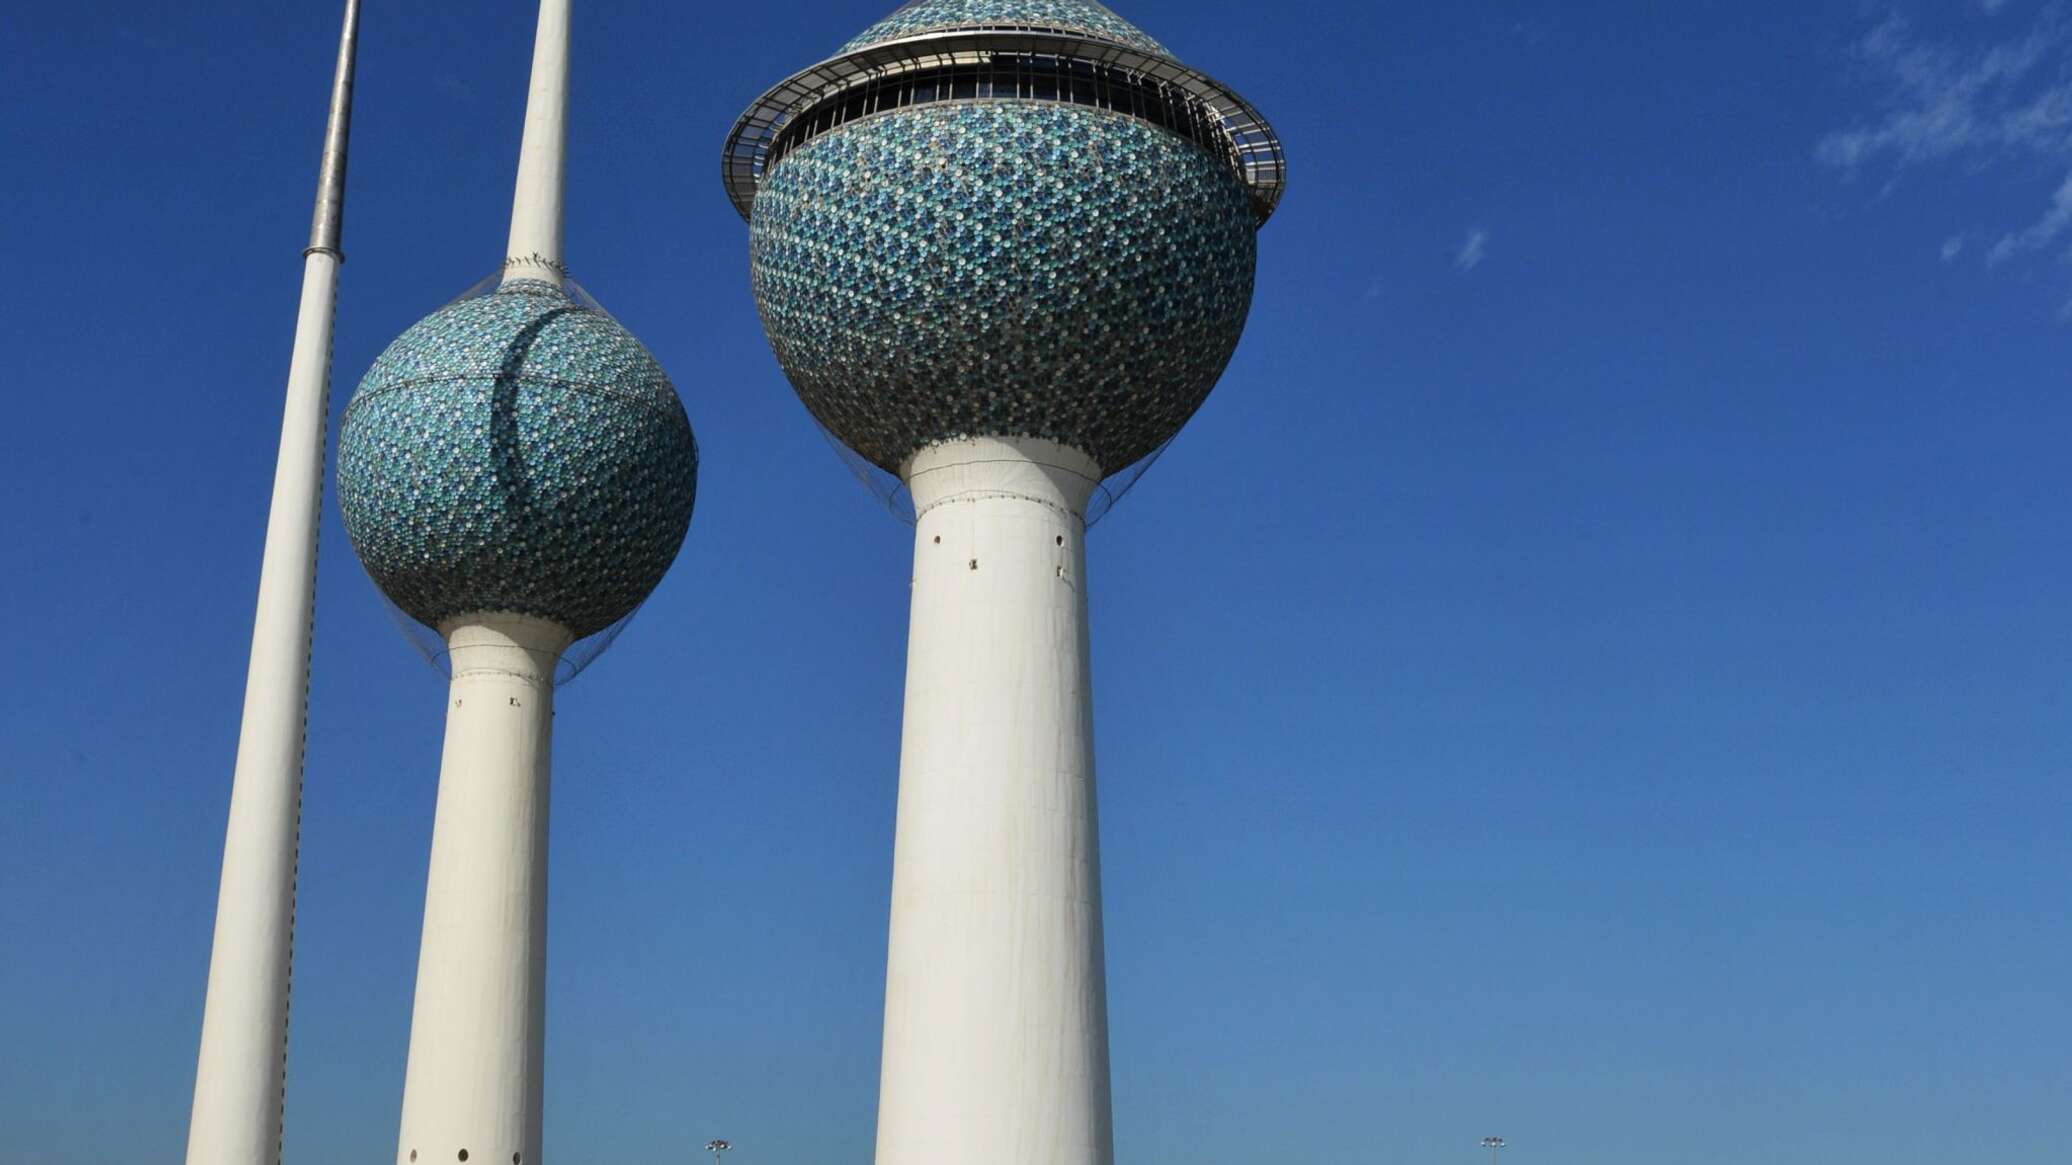 الكويت تدين التصريحات الإسرائيلية بخصوص قرية حوارة وتعتبرها عنصرية متطرفة